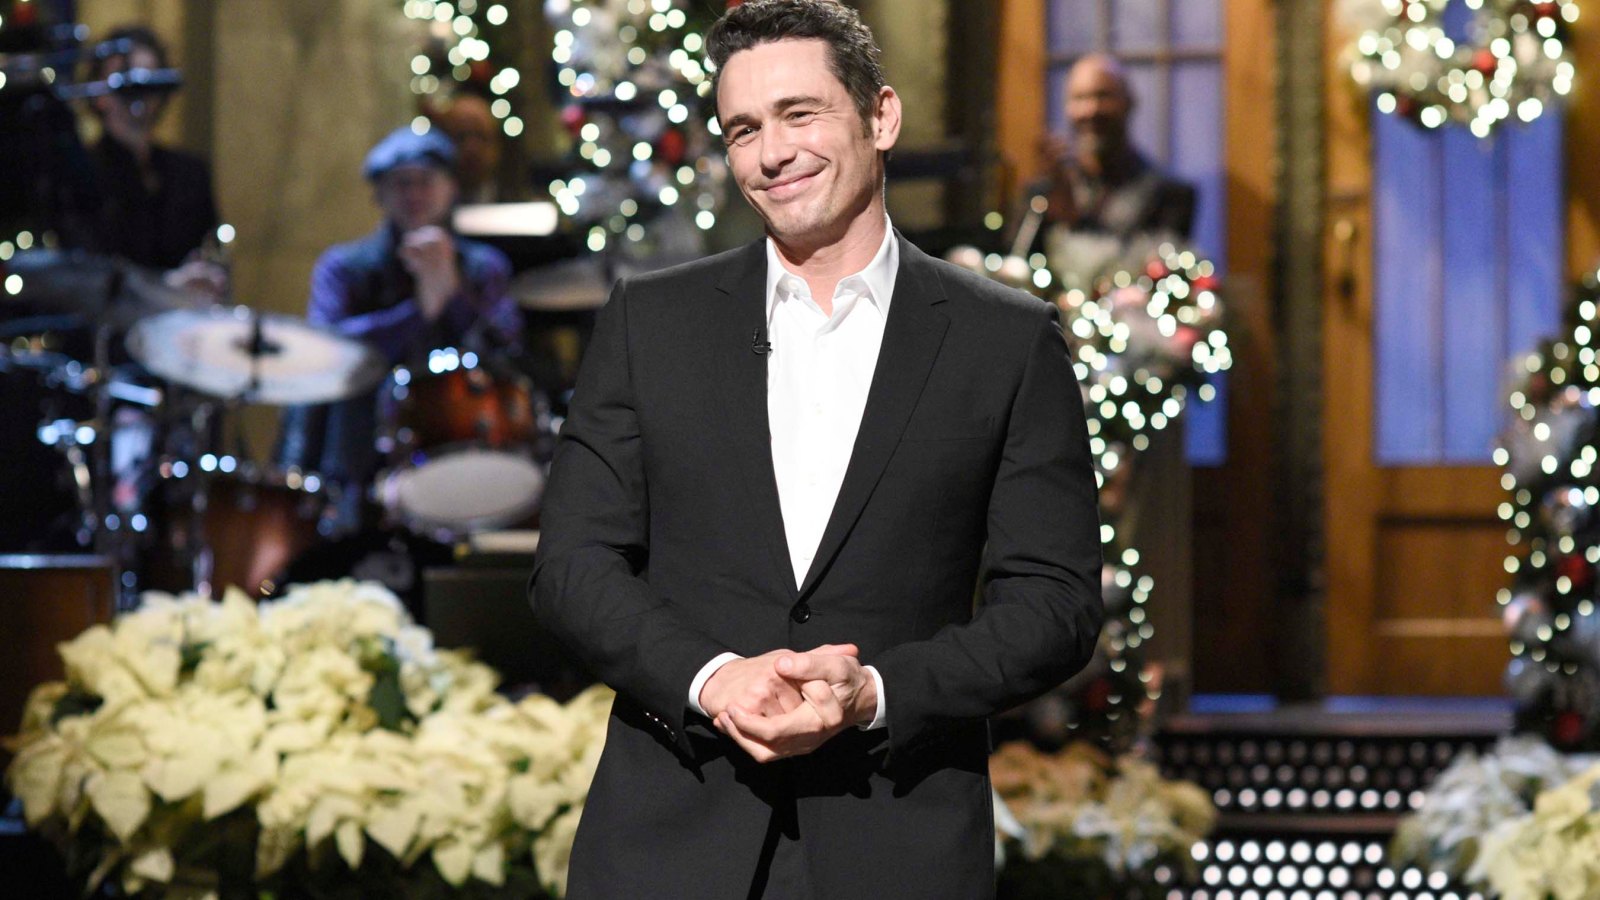 James Franco hosts SNL December 9, 2017